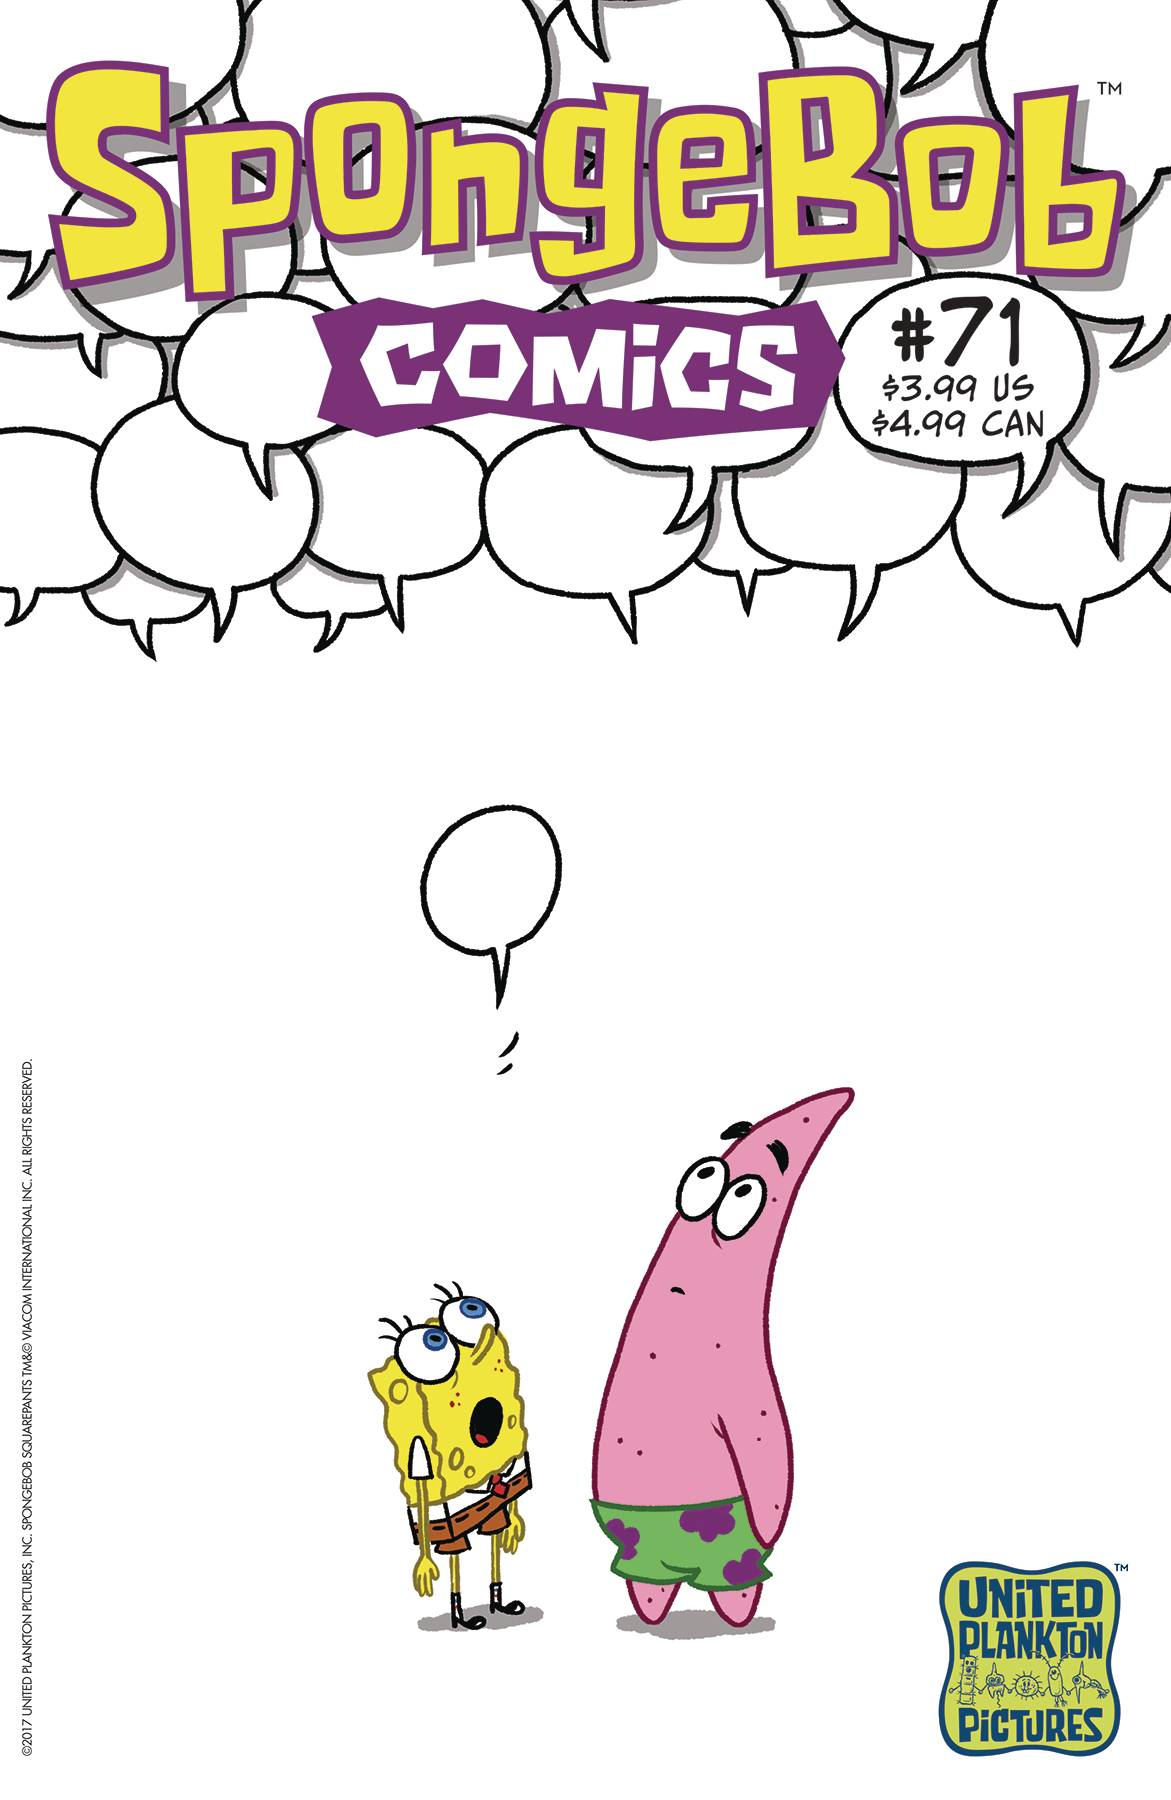 SPONGEBOB COMICS#71